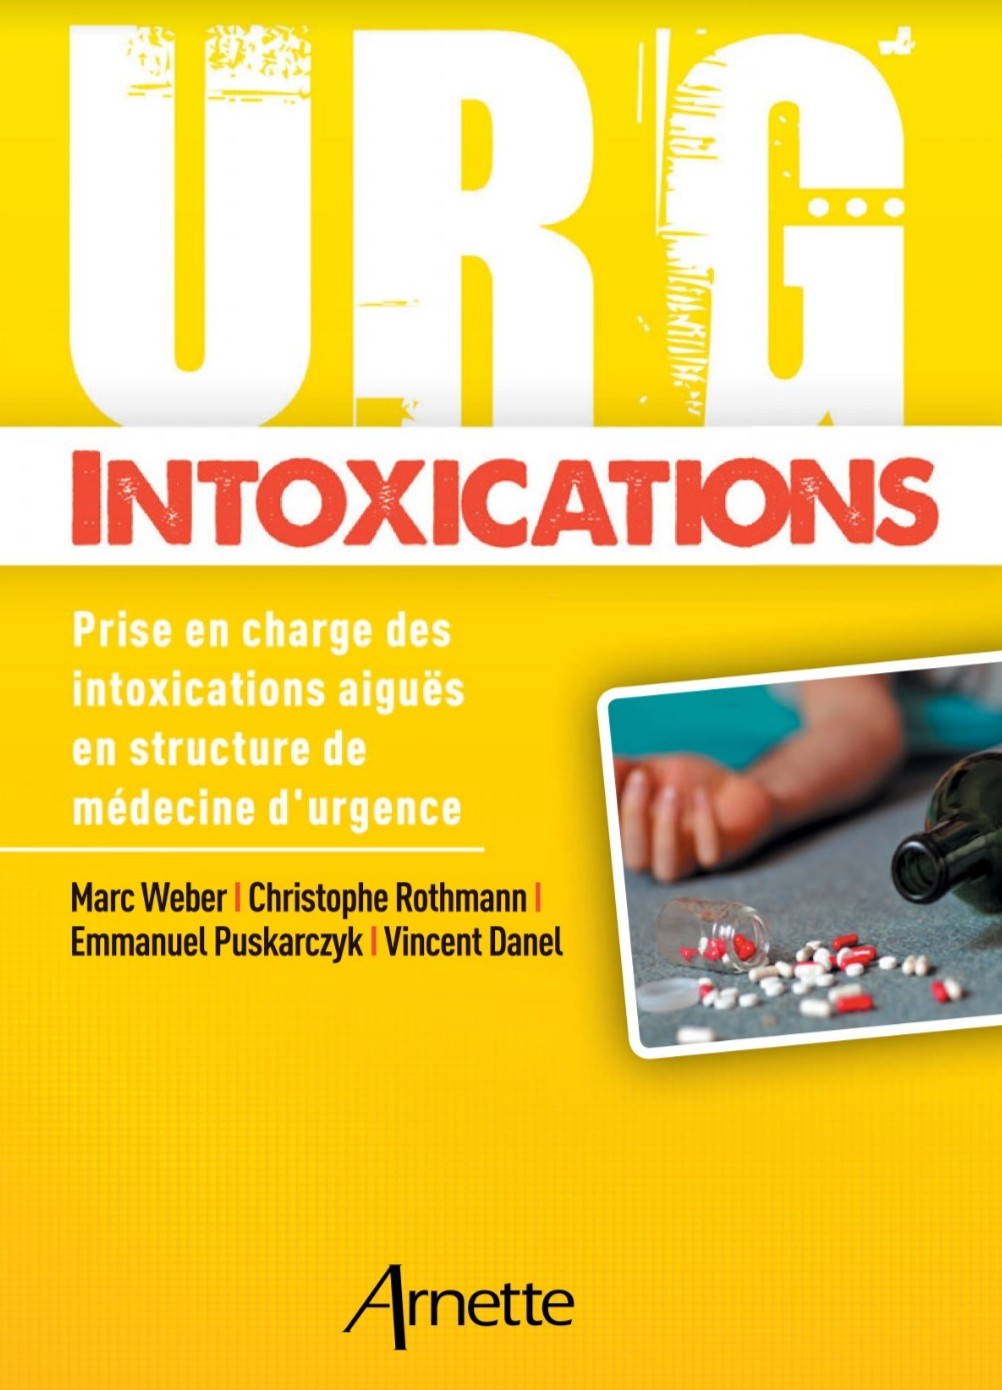 Urg' Intoxications Prise en charge des intoxications aiguës en structure de médecine d'urgence 2018 PDF gratuit 